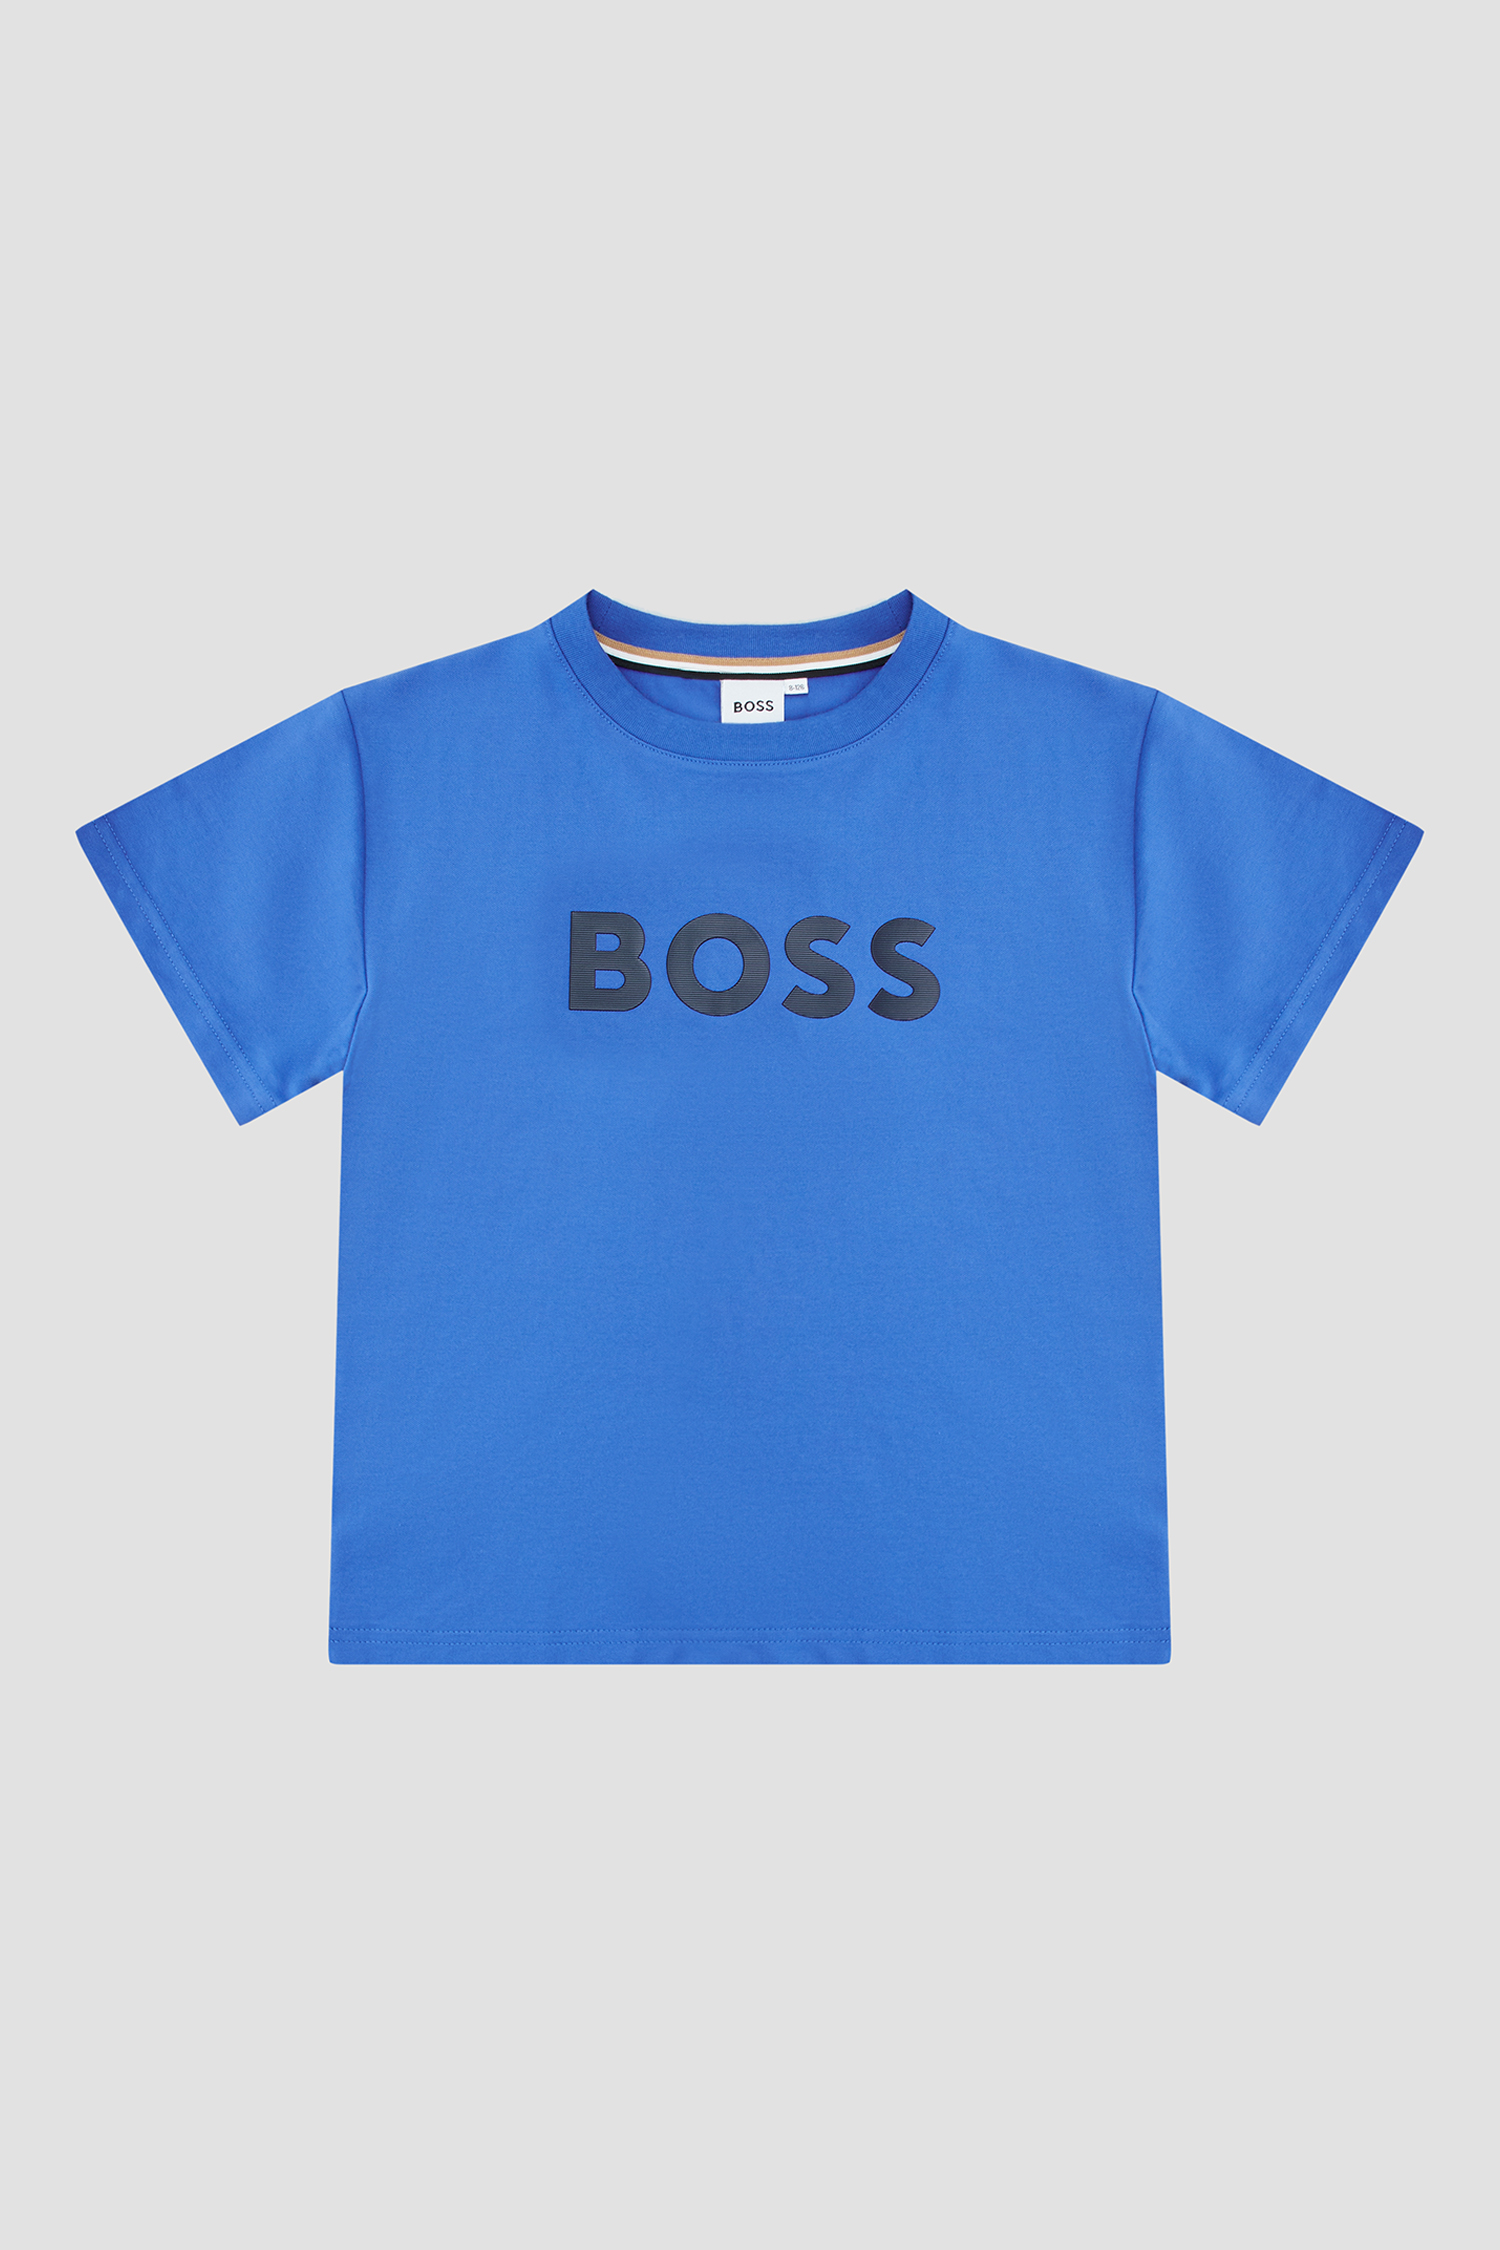 Дитяча синя футболка BOSS kids J25O71;846